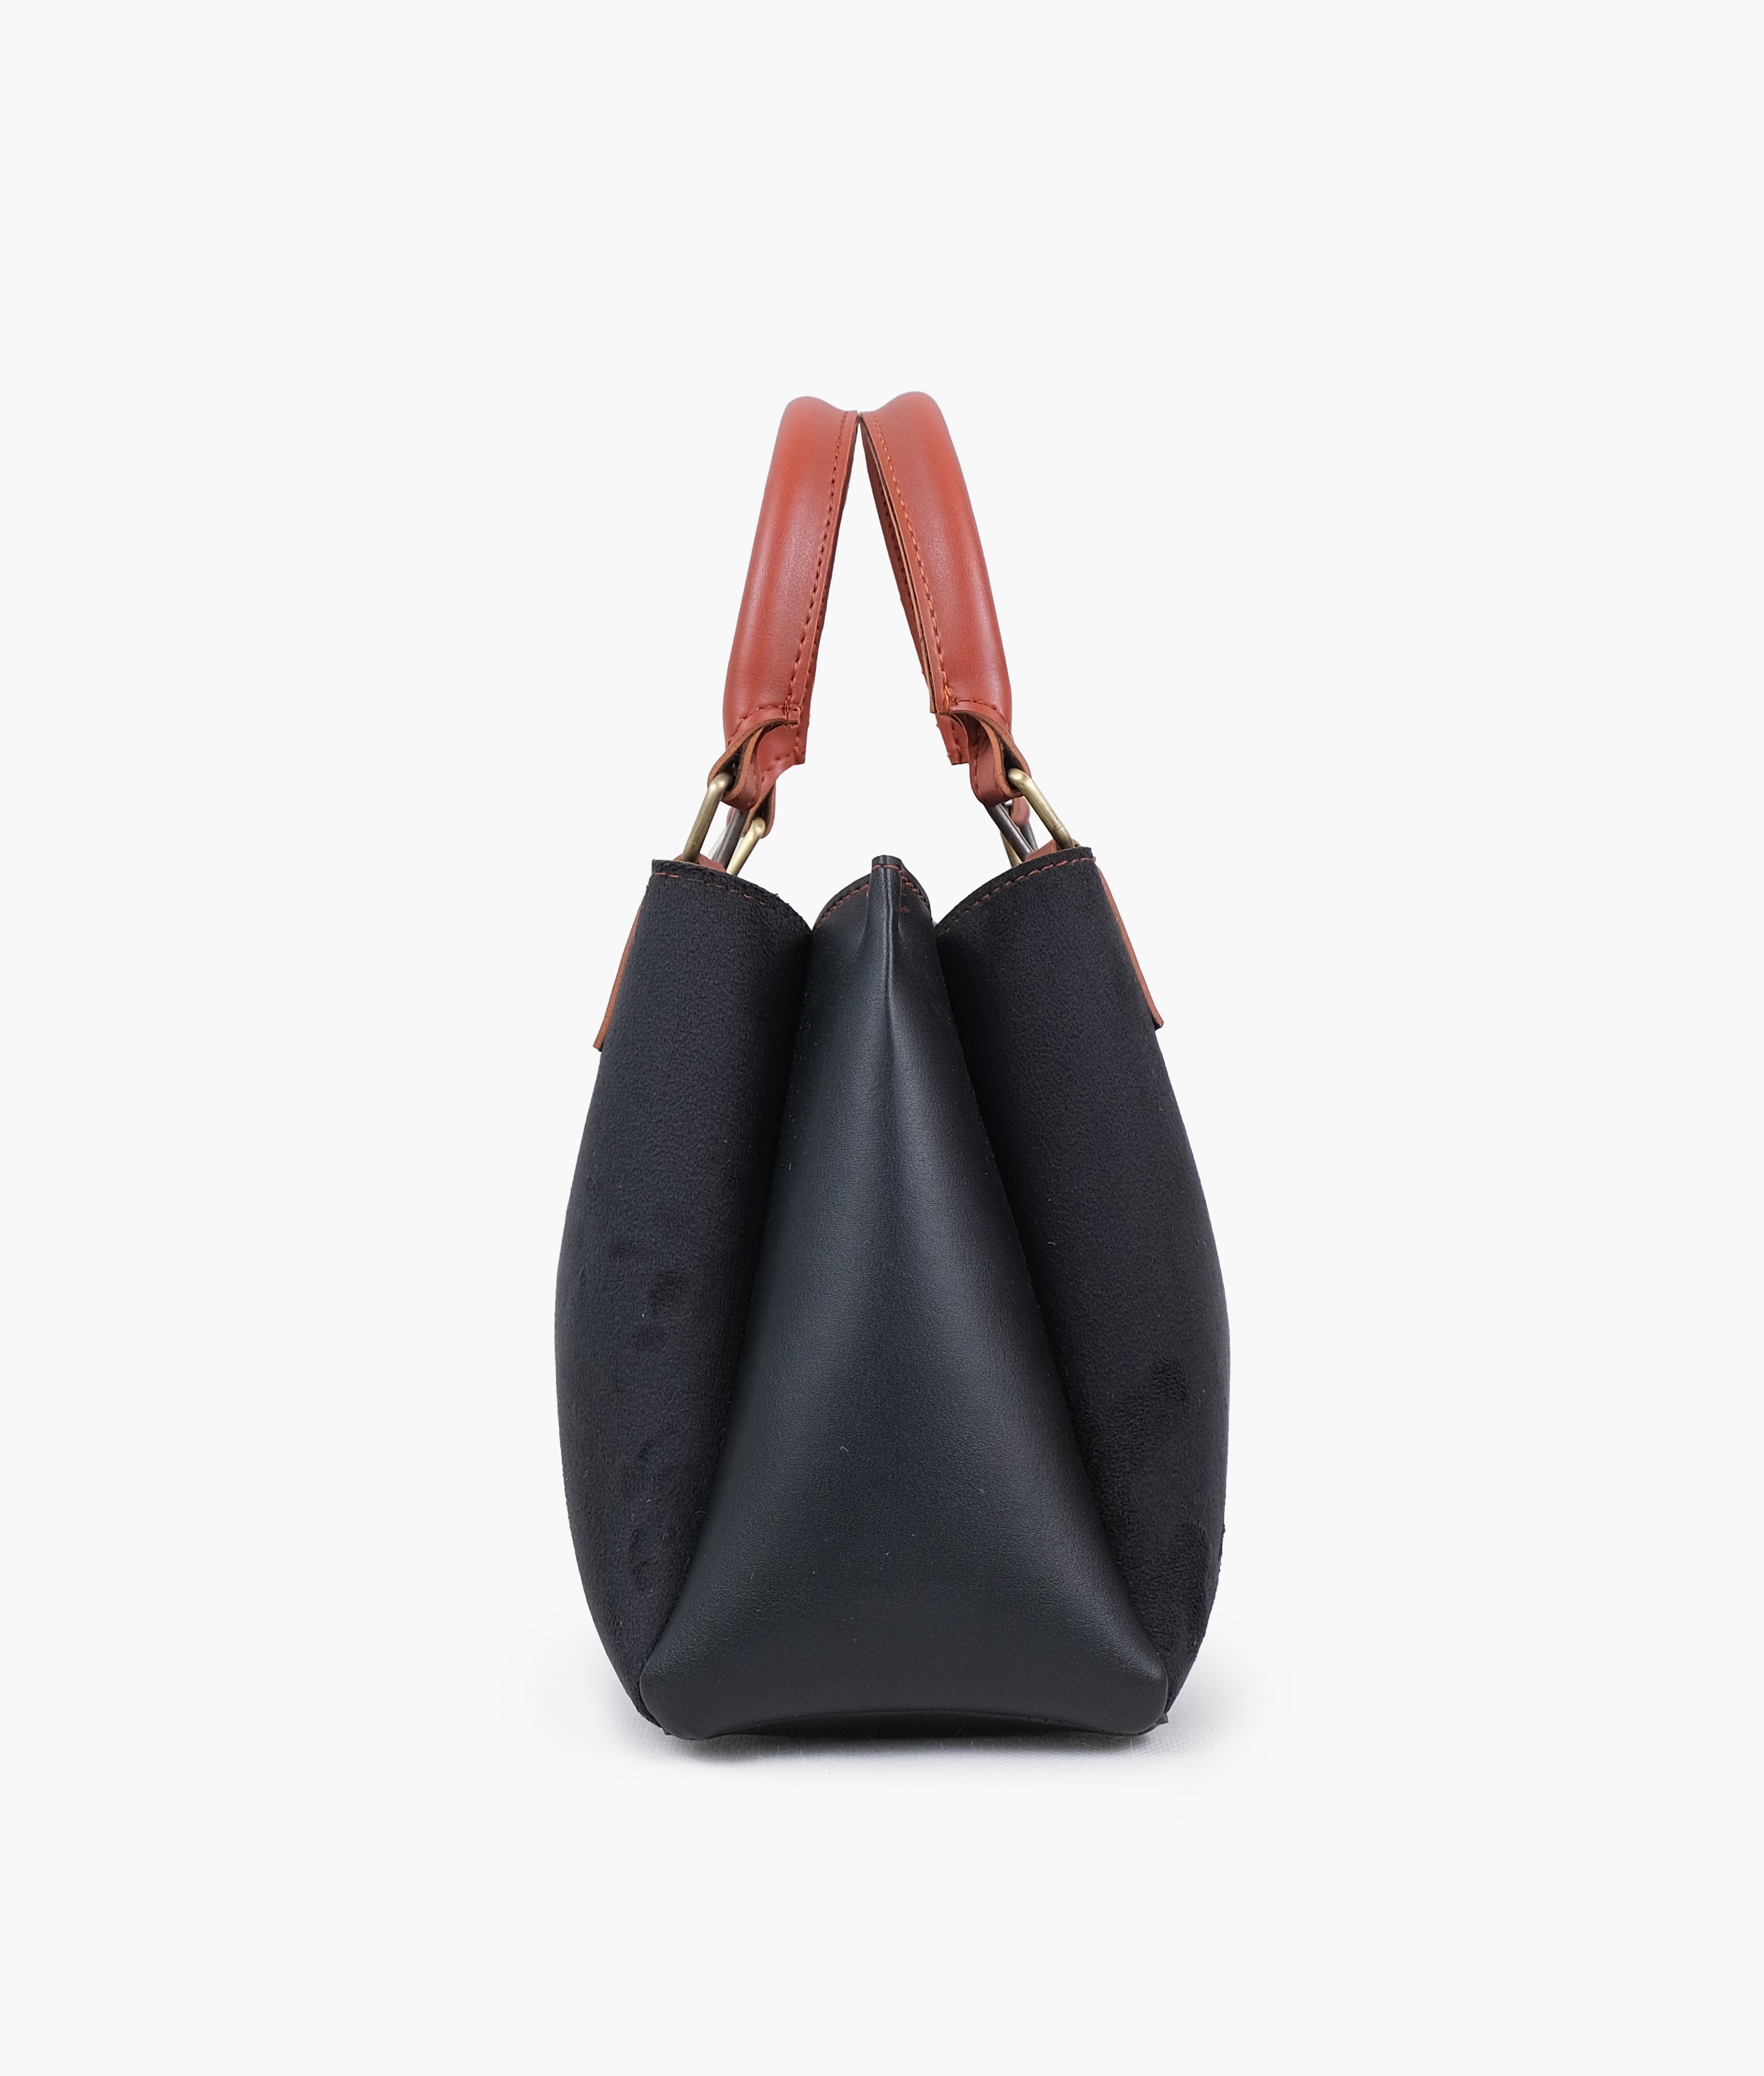 Black suede mini bag